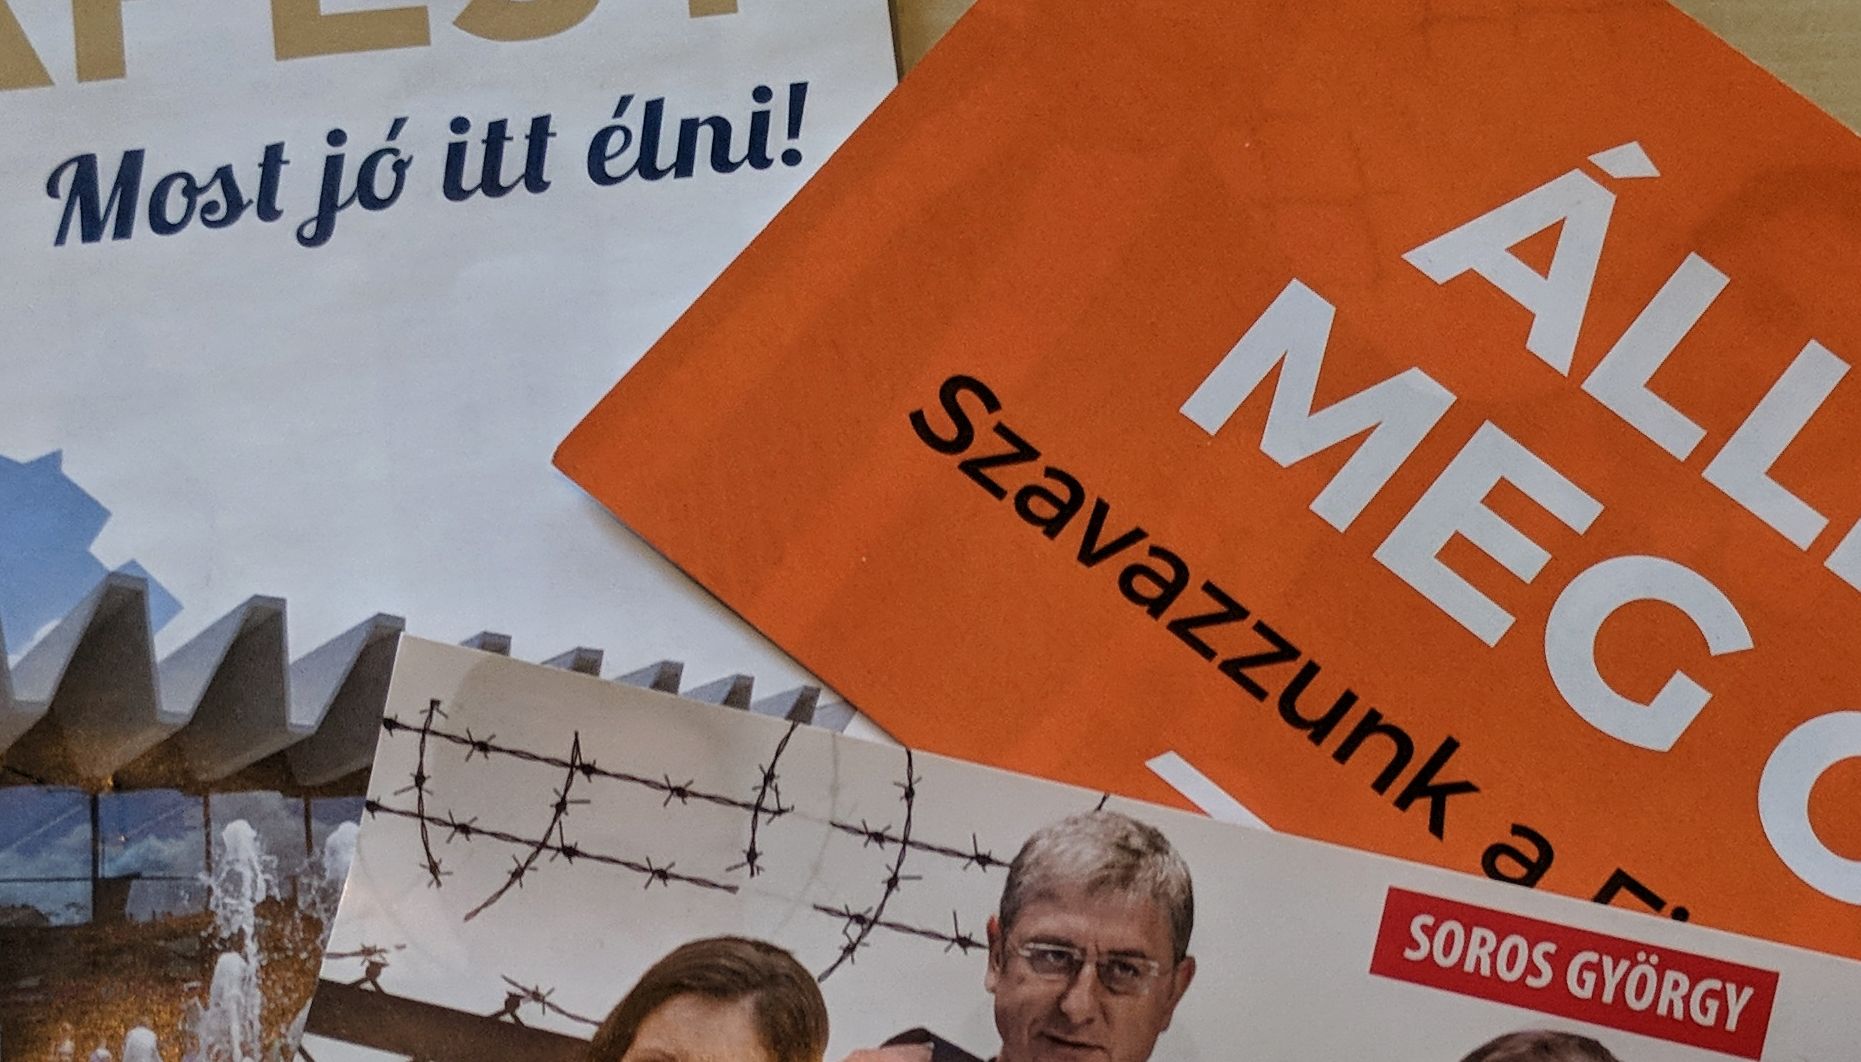 Ma reggel kinyitottam a postaládát, és azonnal megértettem, hogy a Fideszre kell szavaznom